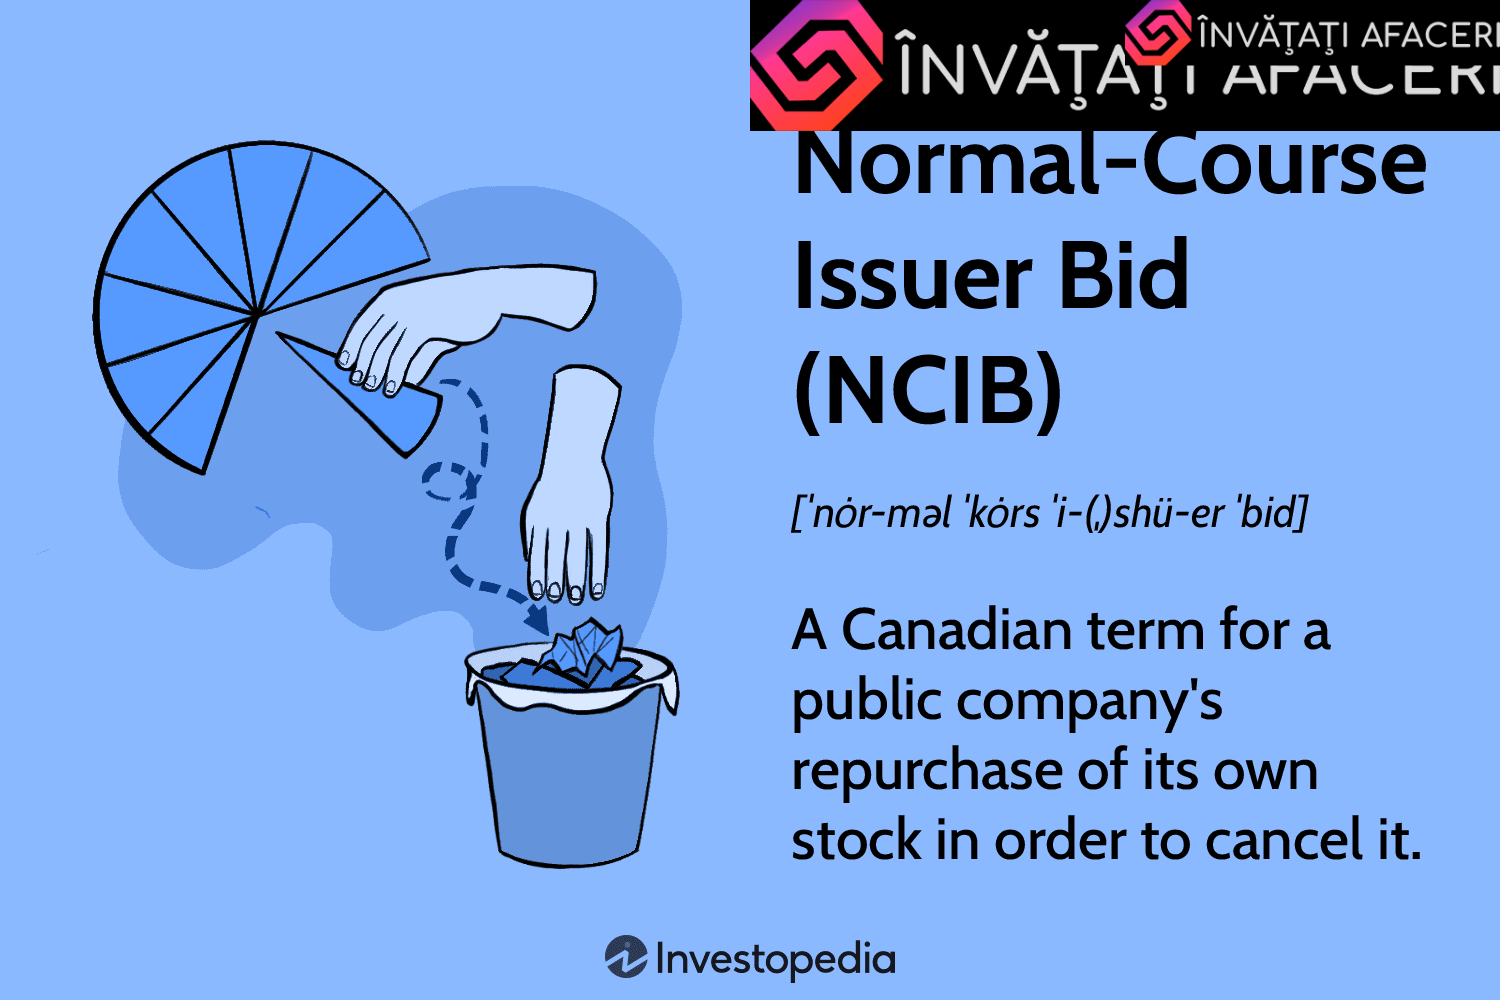 Oferta de emisor de liquidación normal (NCIB)